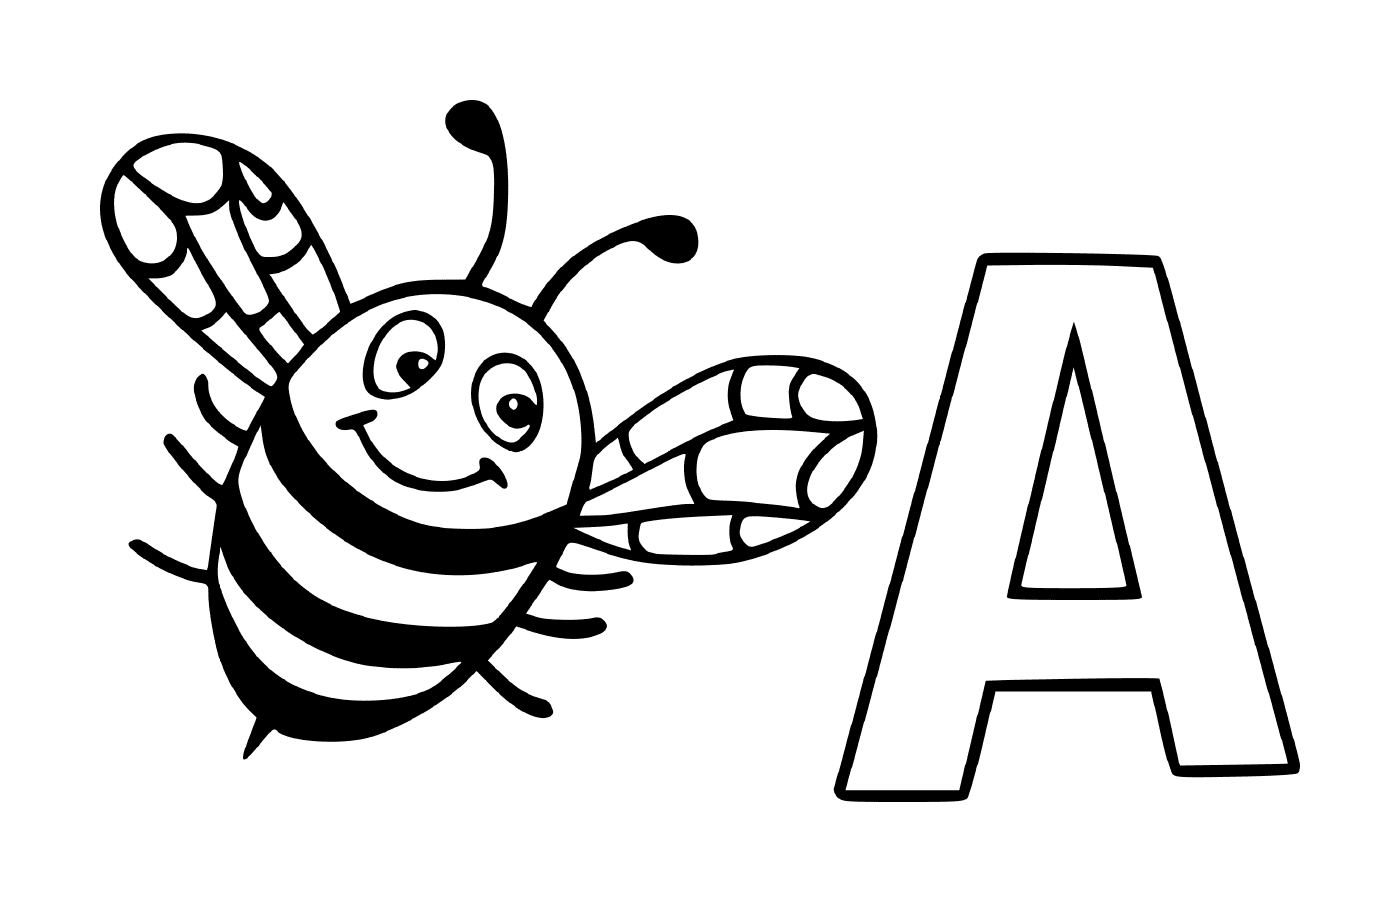   Lettre A avec une abeille 